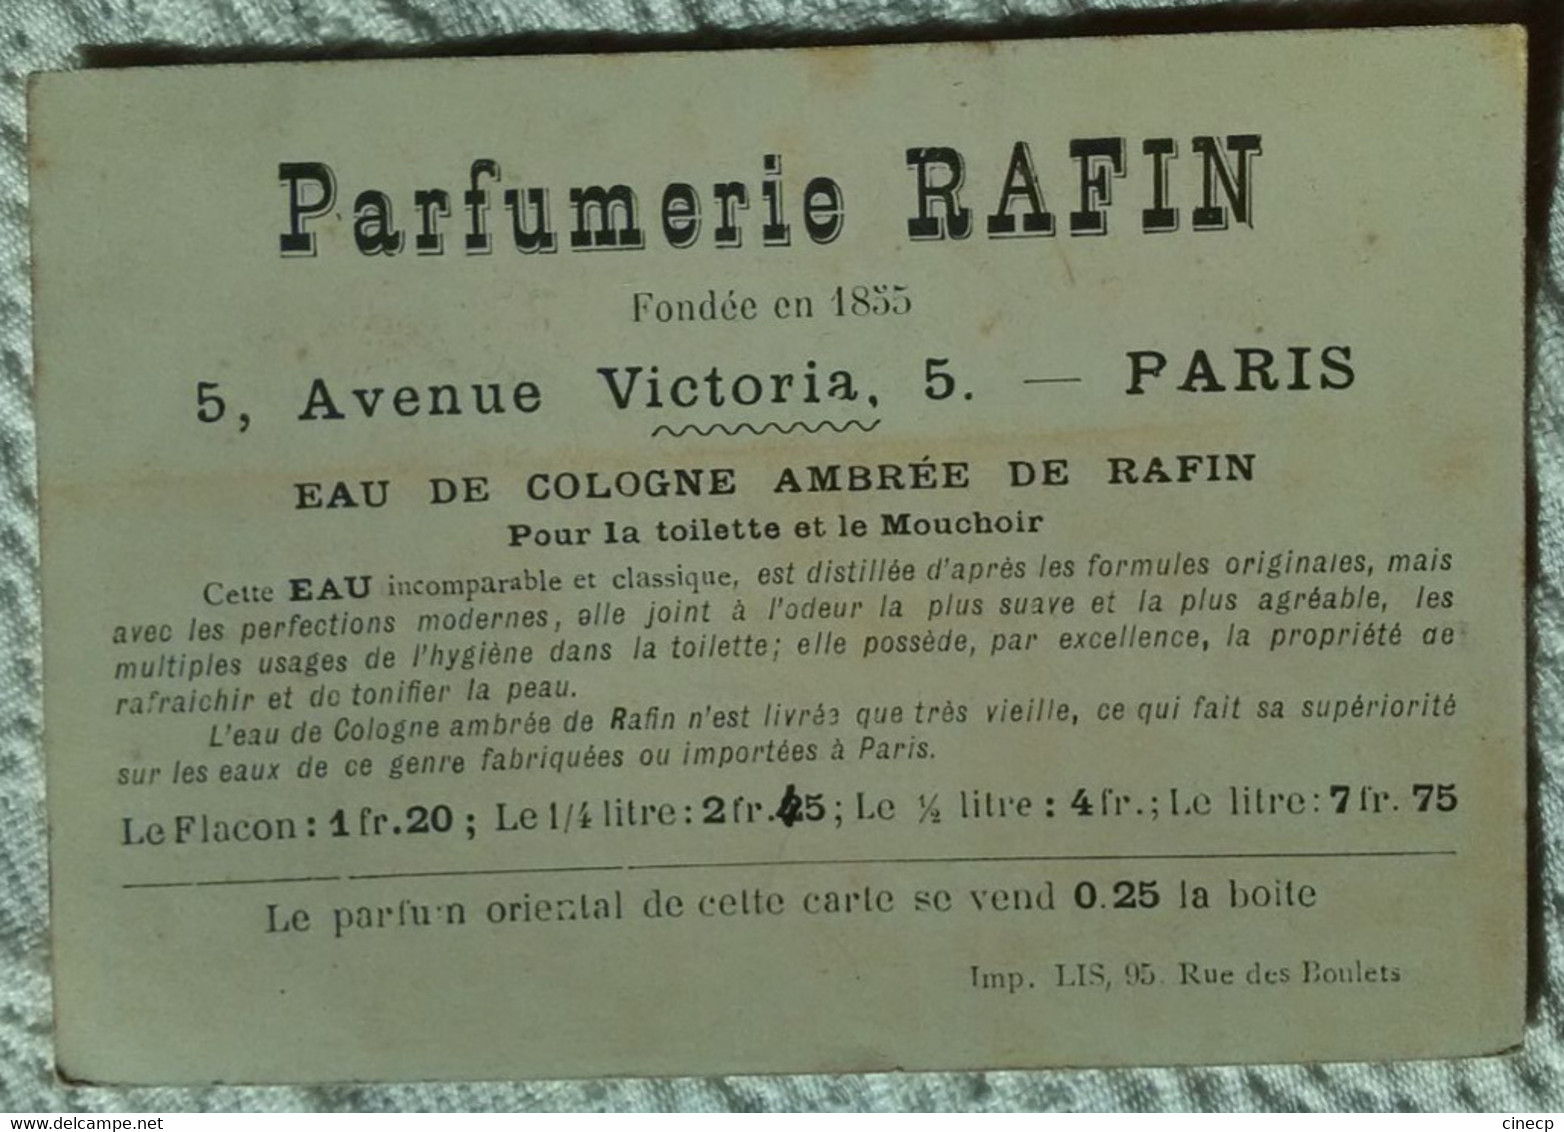 Très Jolie Carte Ancienne PARFUMERIE RAFIN PARIS PARFUM ORIENTAL Eau De Cologne Ambrée - Anciennes (jusque 1960)